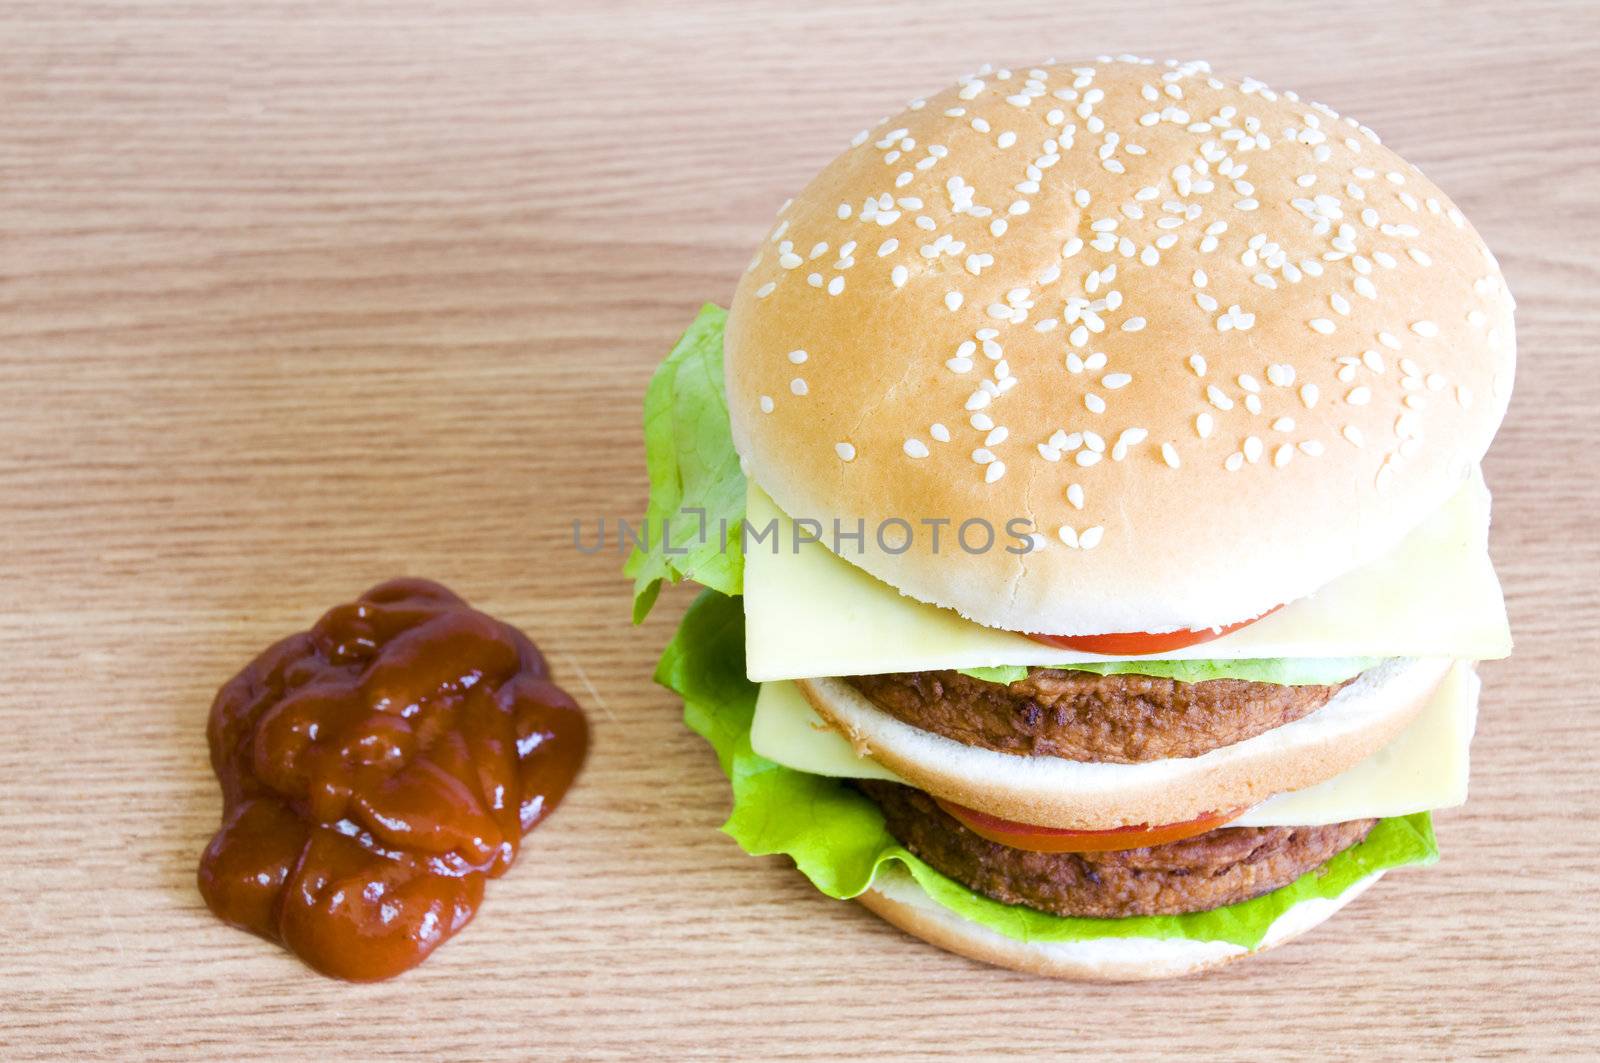 hamburger ketchup by no4aphoto